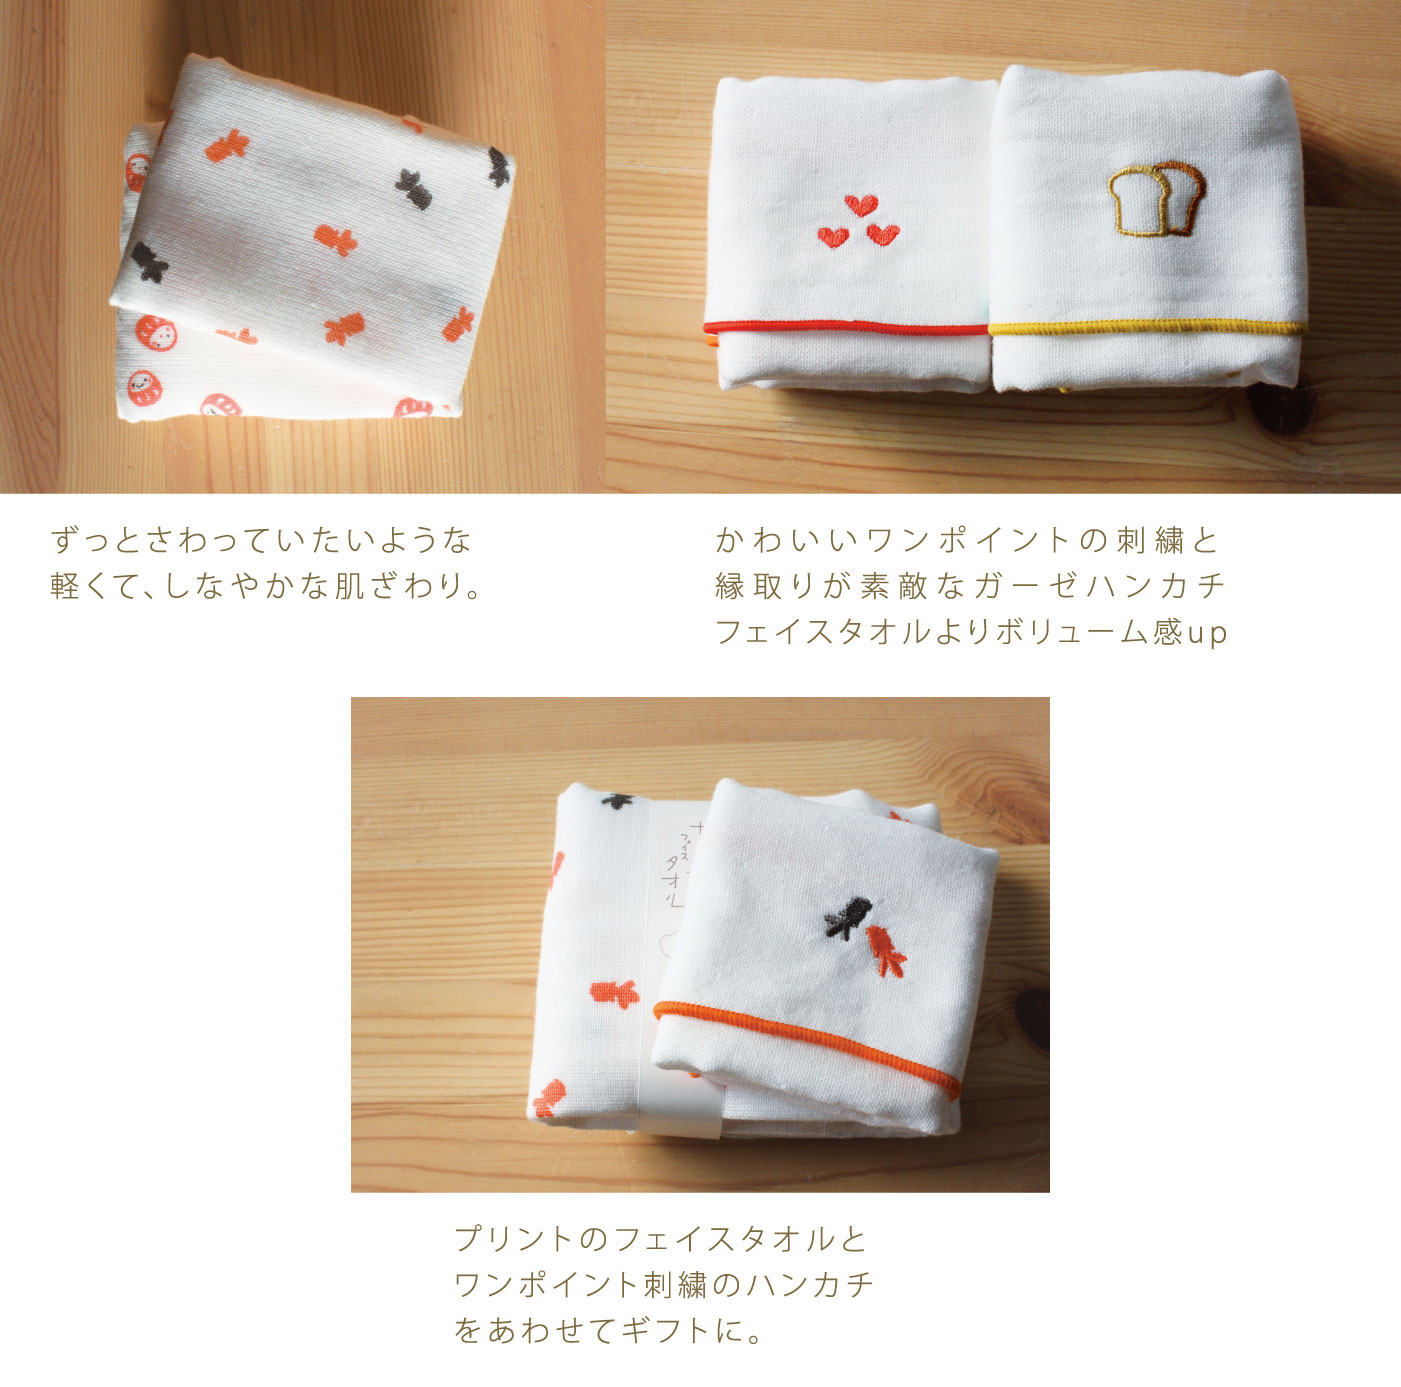 ご紹介します！日本製！さらっとしなやかな肌触りのガーゼのタオル！刺繍ハンカチ】スプーンとフォーク 和雑貨卸問屋